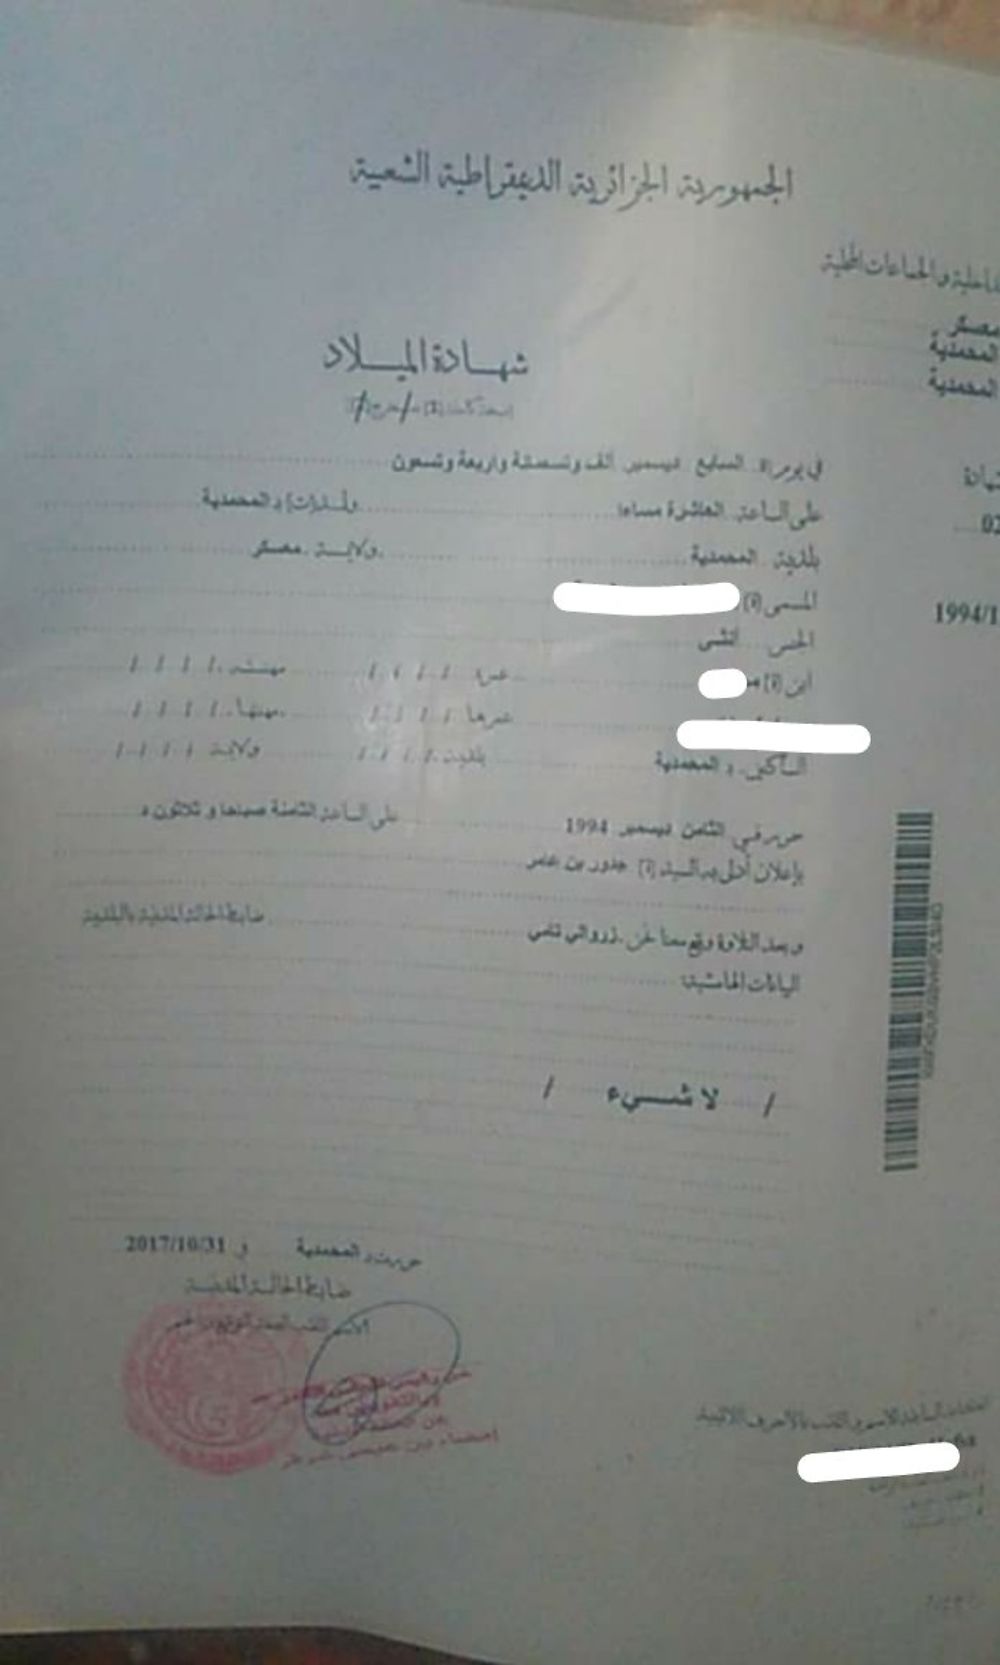 Re: Certificat de capacité à mariage (ccam) - formalités pour se marier en Algerie - some-one